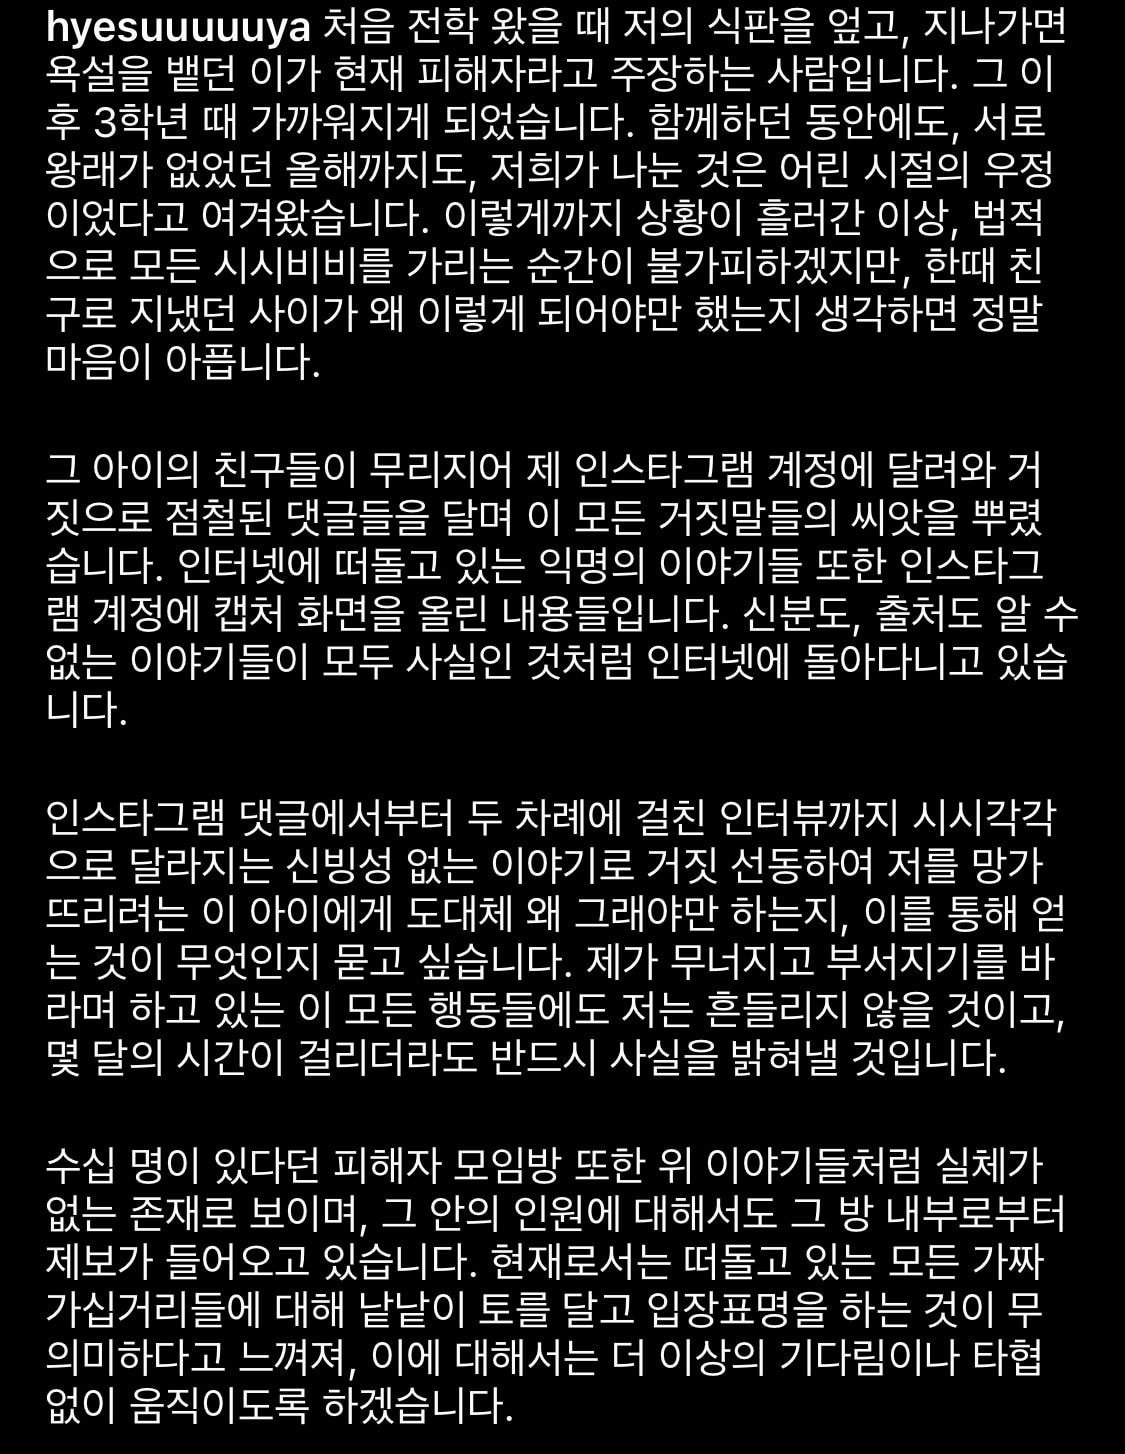 박혜수 인스타그램 글 전문